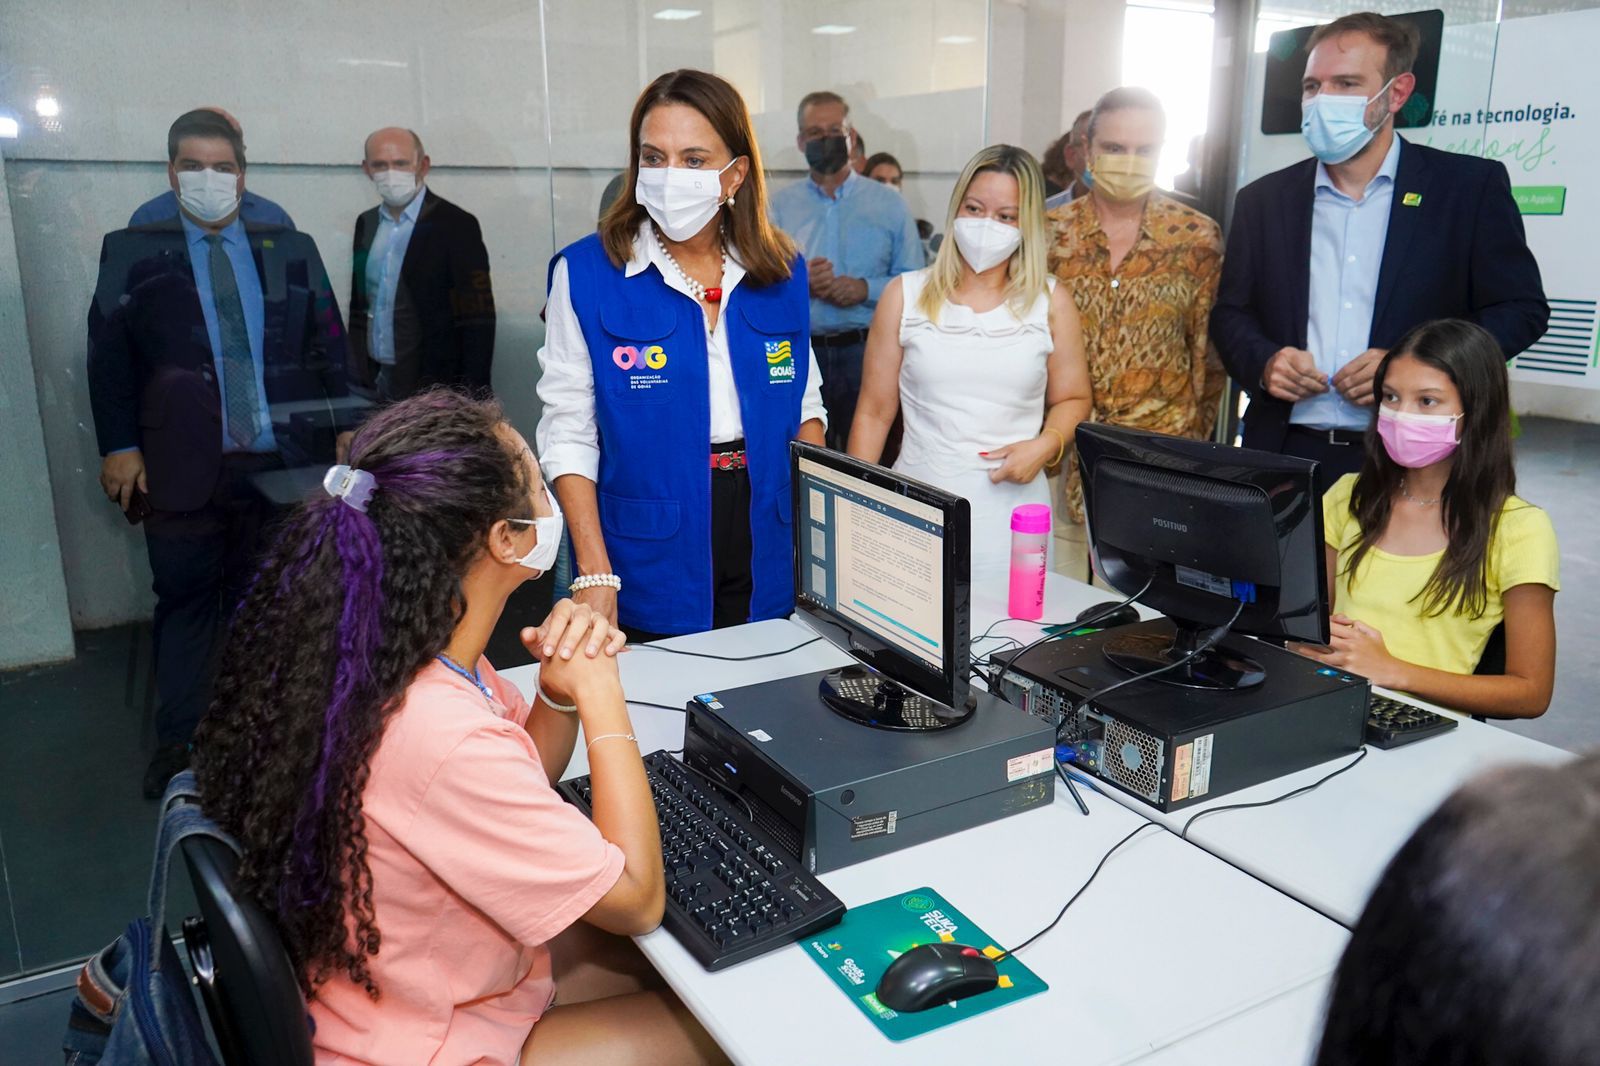 Primeira-dama Gracinha Caiado inaugura primeiro Centro de Recondicionamento de Computadores e Capacitação (CRC) do Estado, que oferece formação profissional tecnológica para jovens